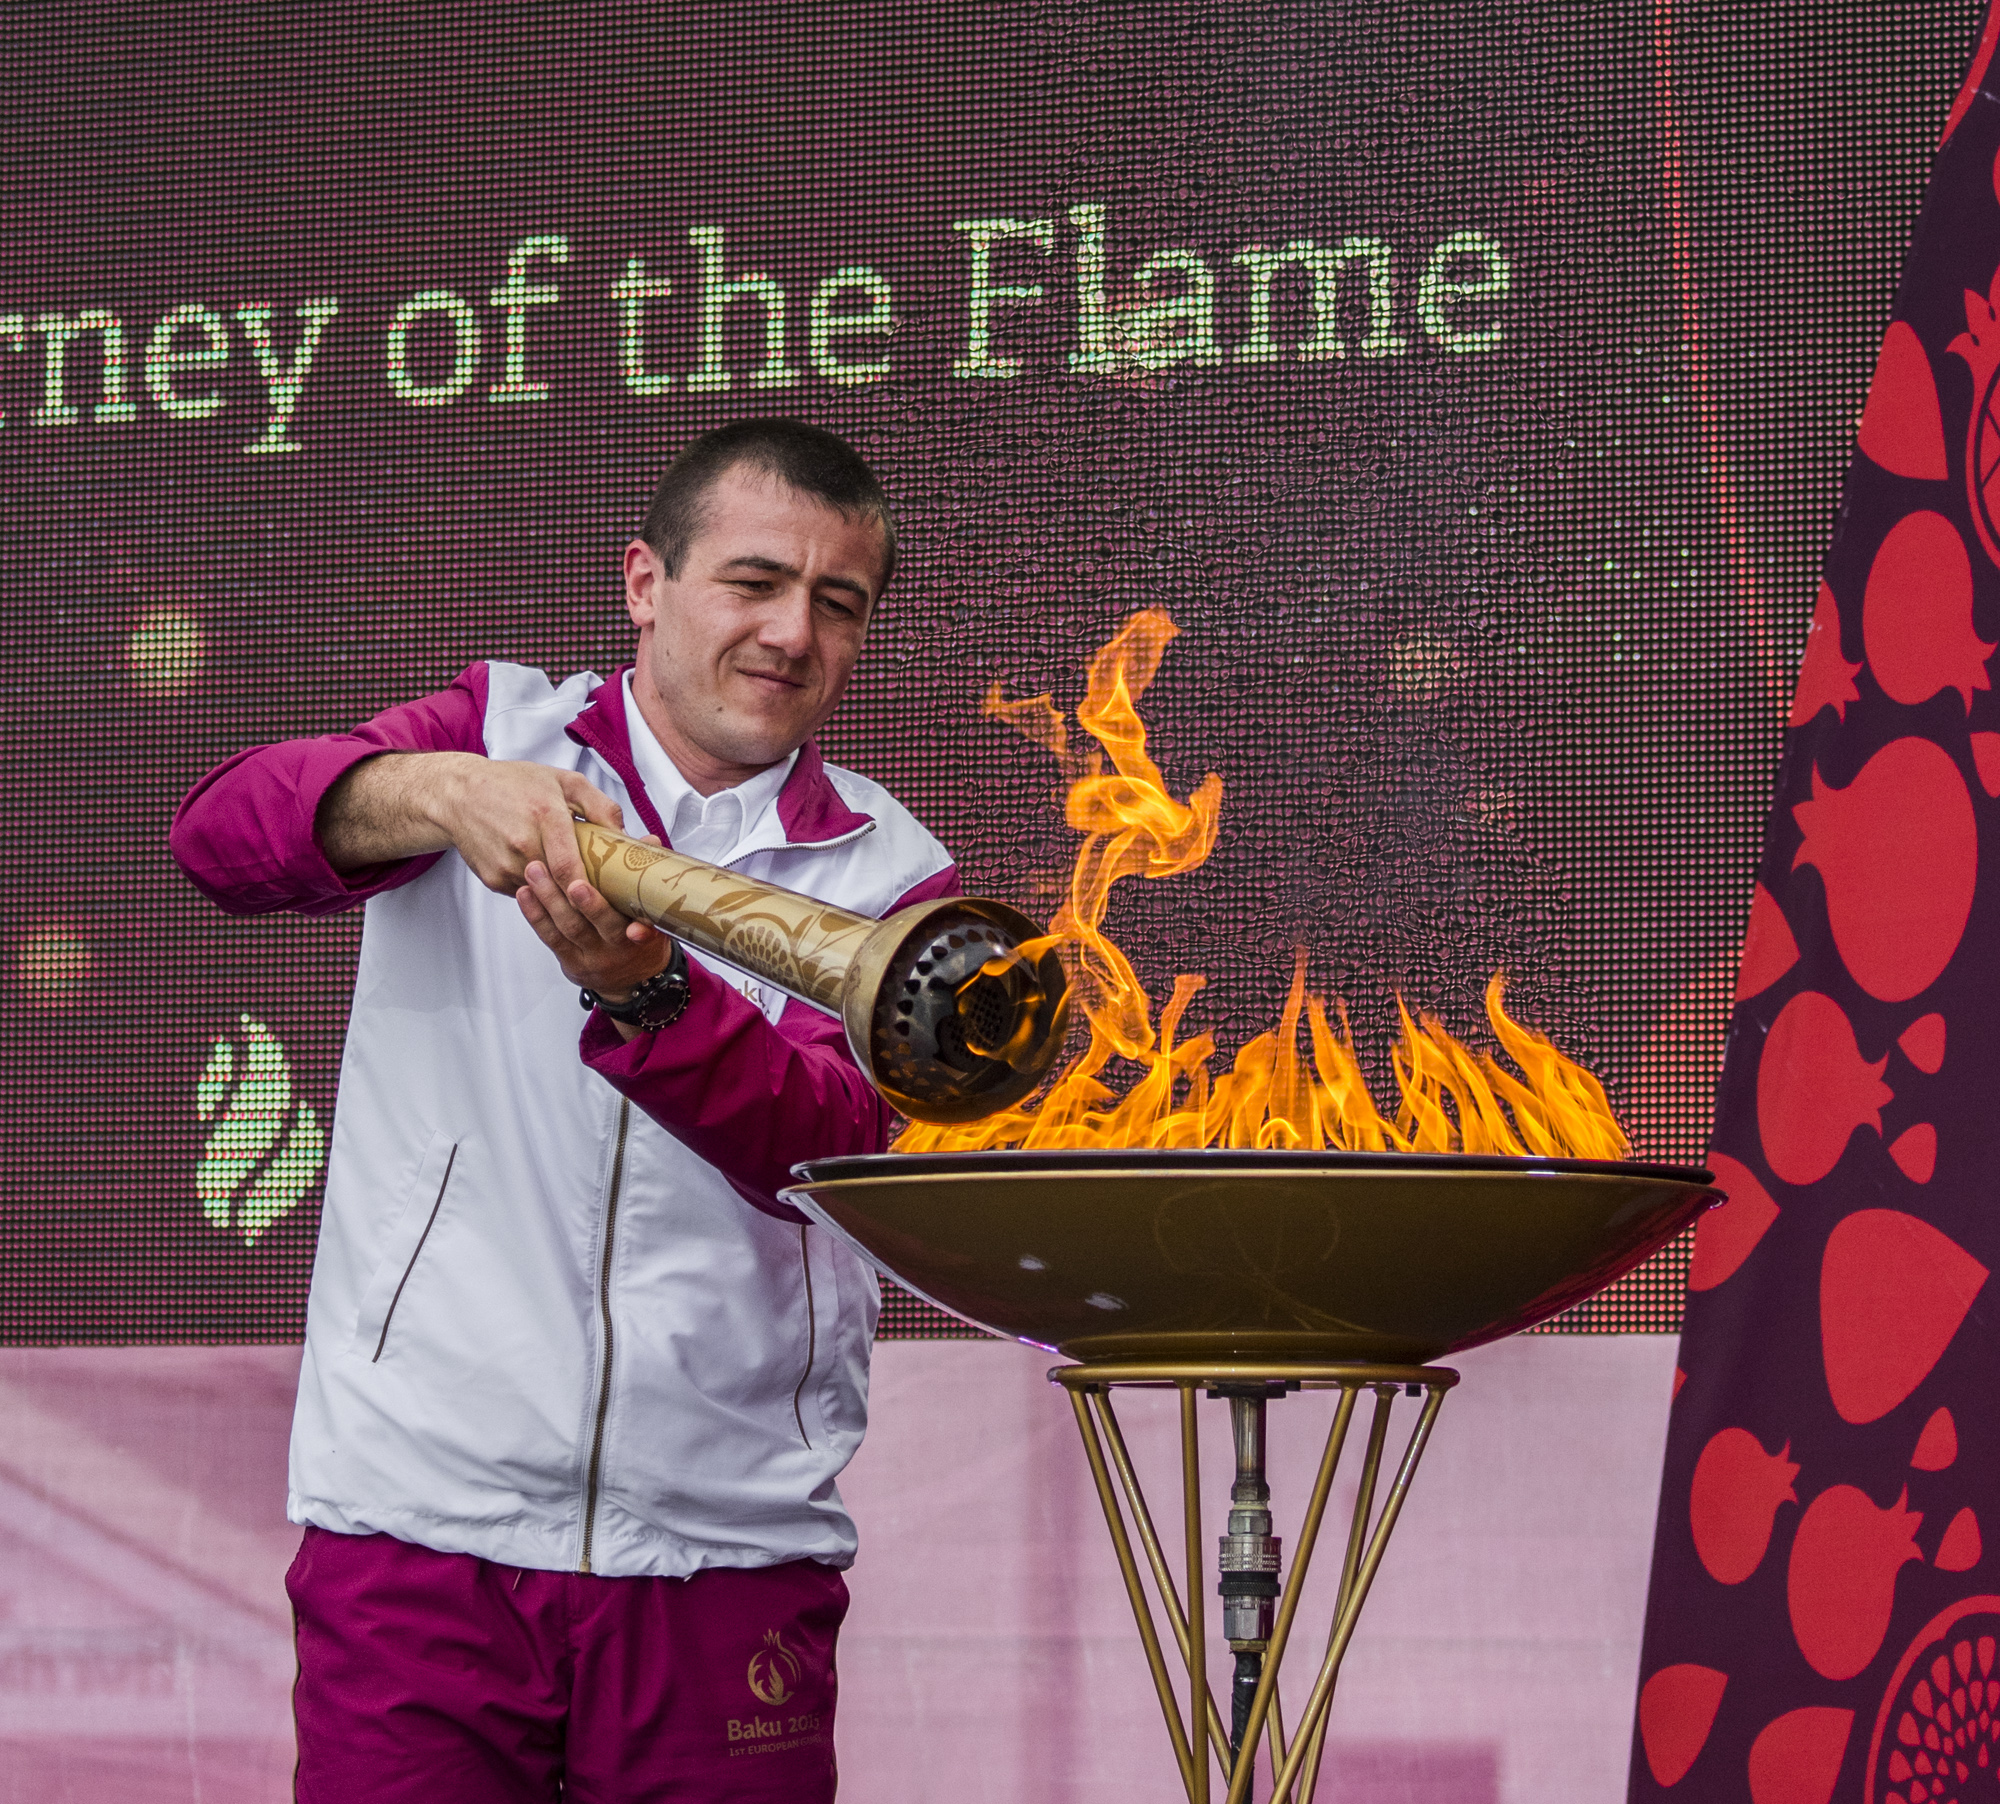 Guba welcomes Baku 2015 torch